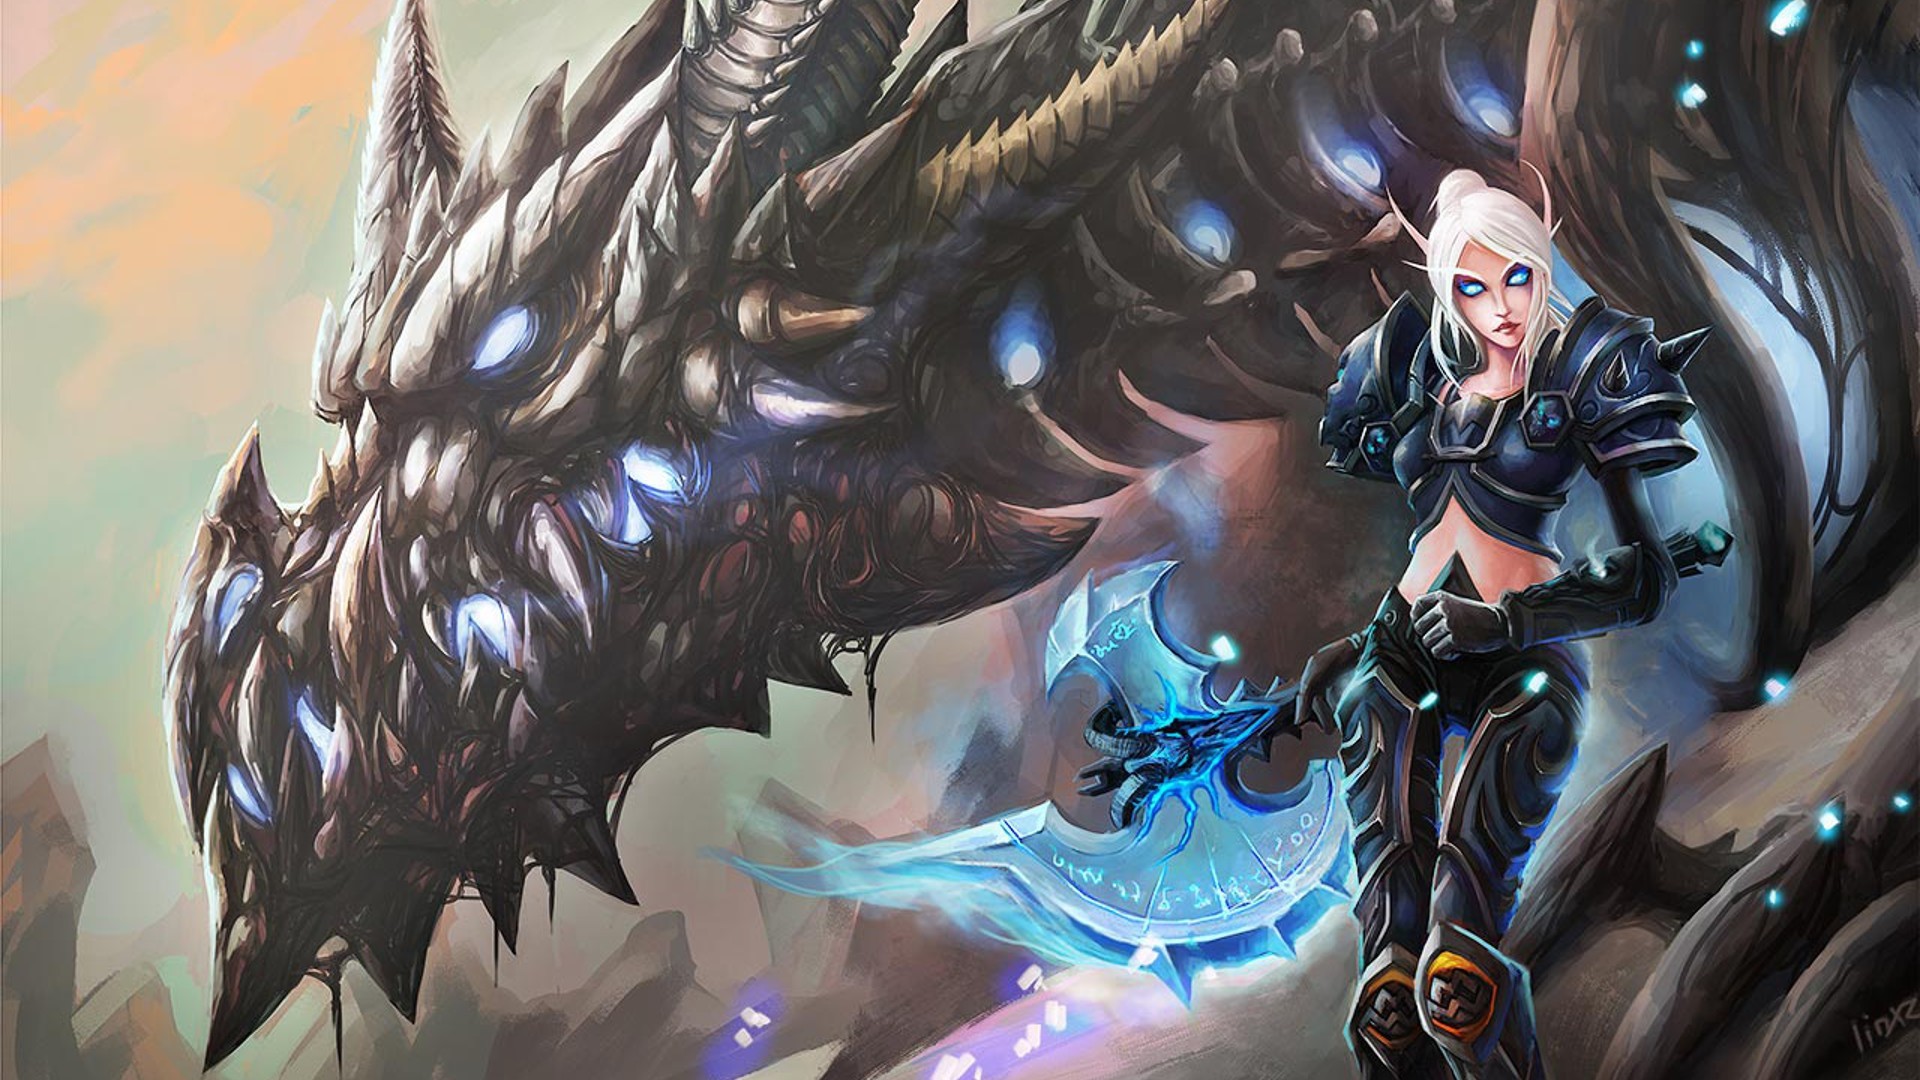 Anime World of Warcraft dragon Blood Elf death knights Sindragosa